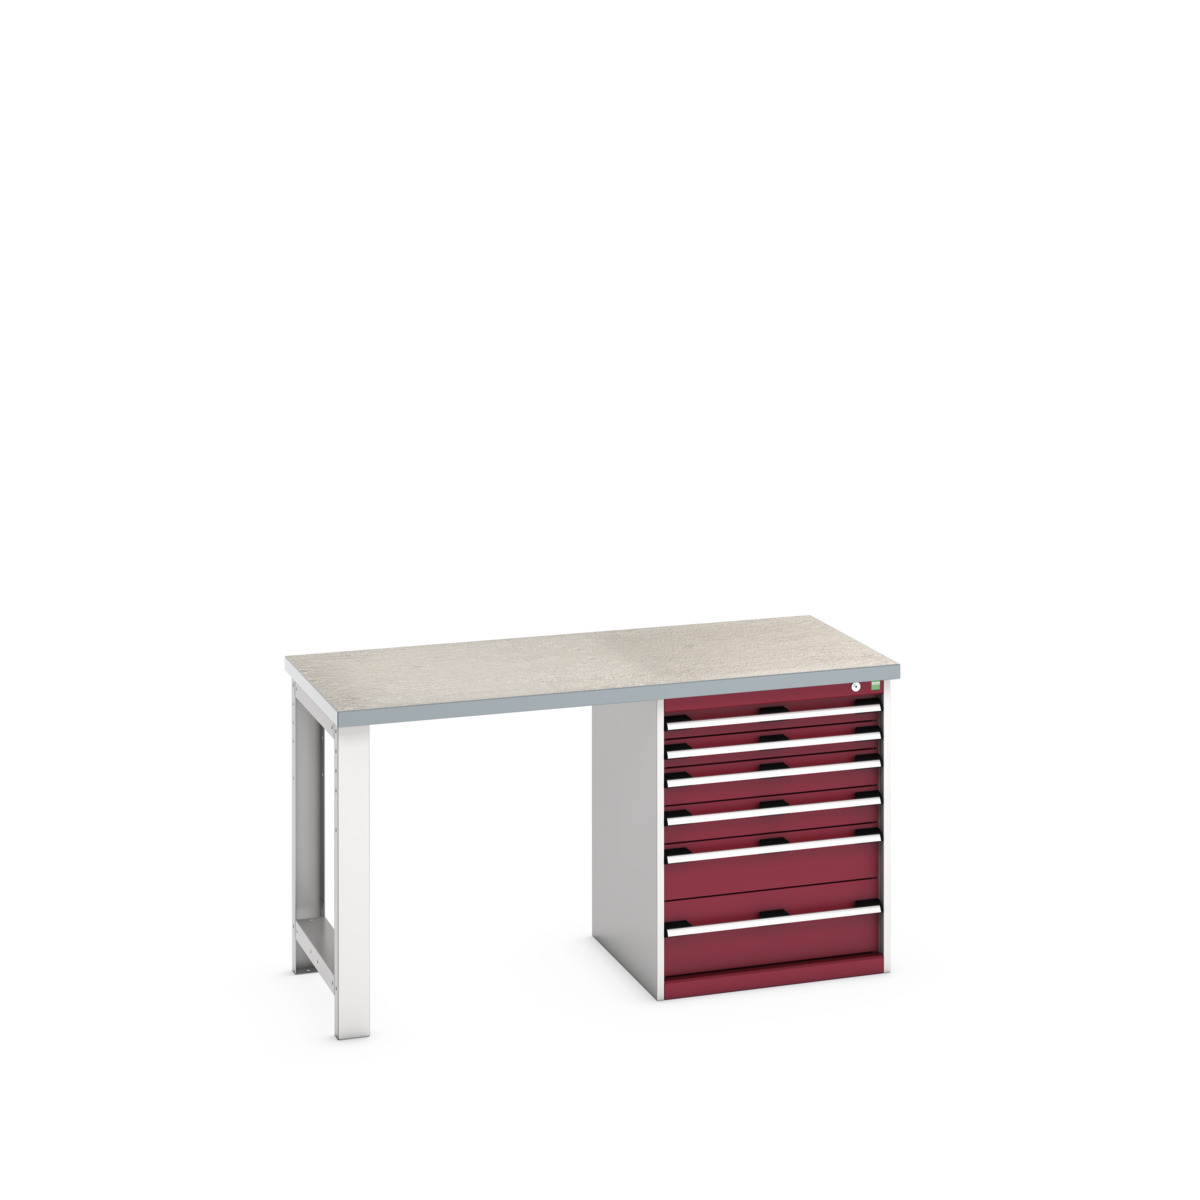 41003141.24V - cubio pedestal bench (lino)